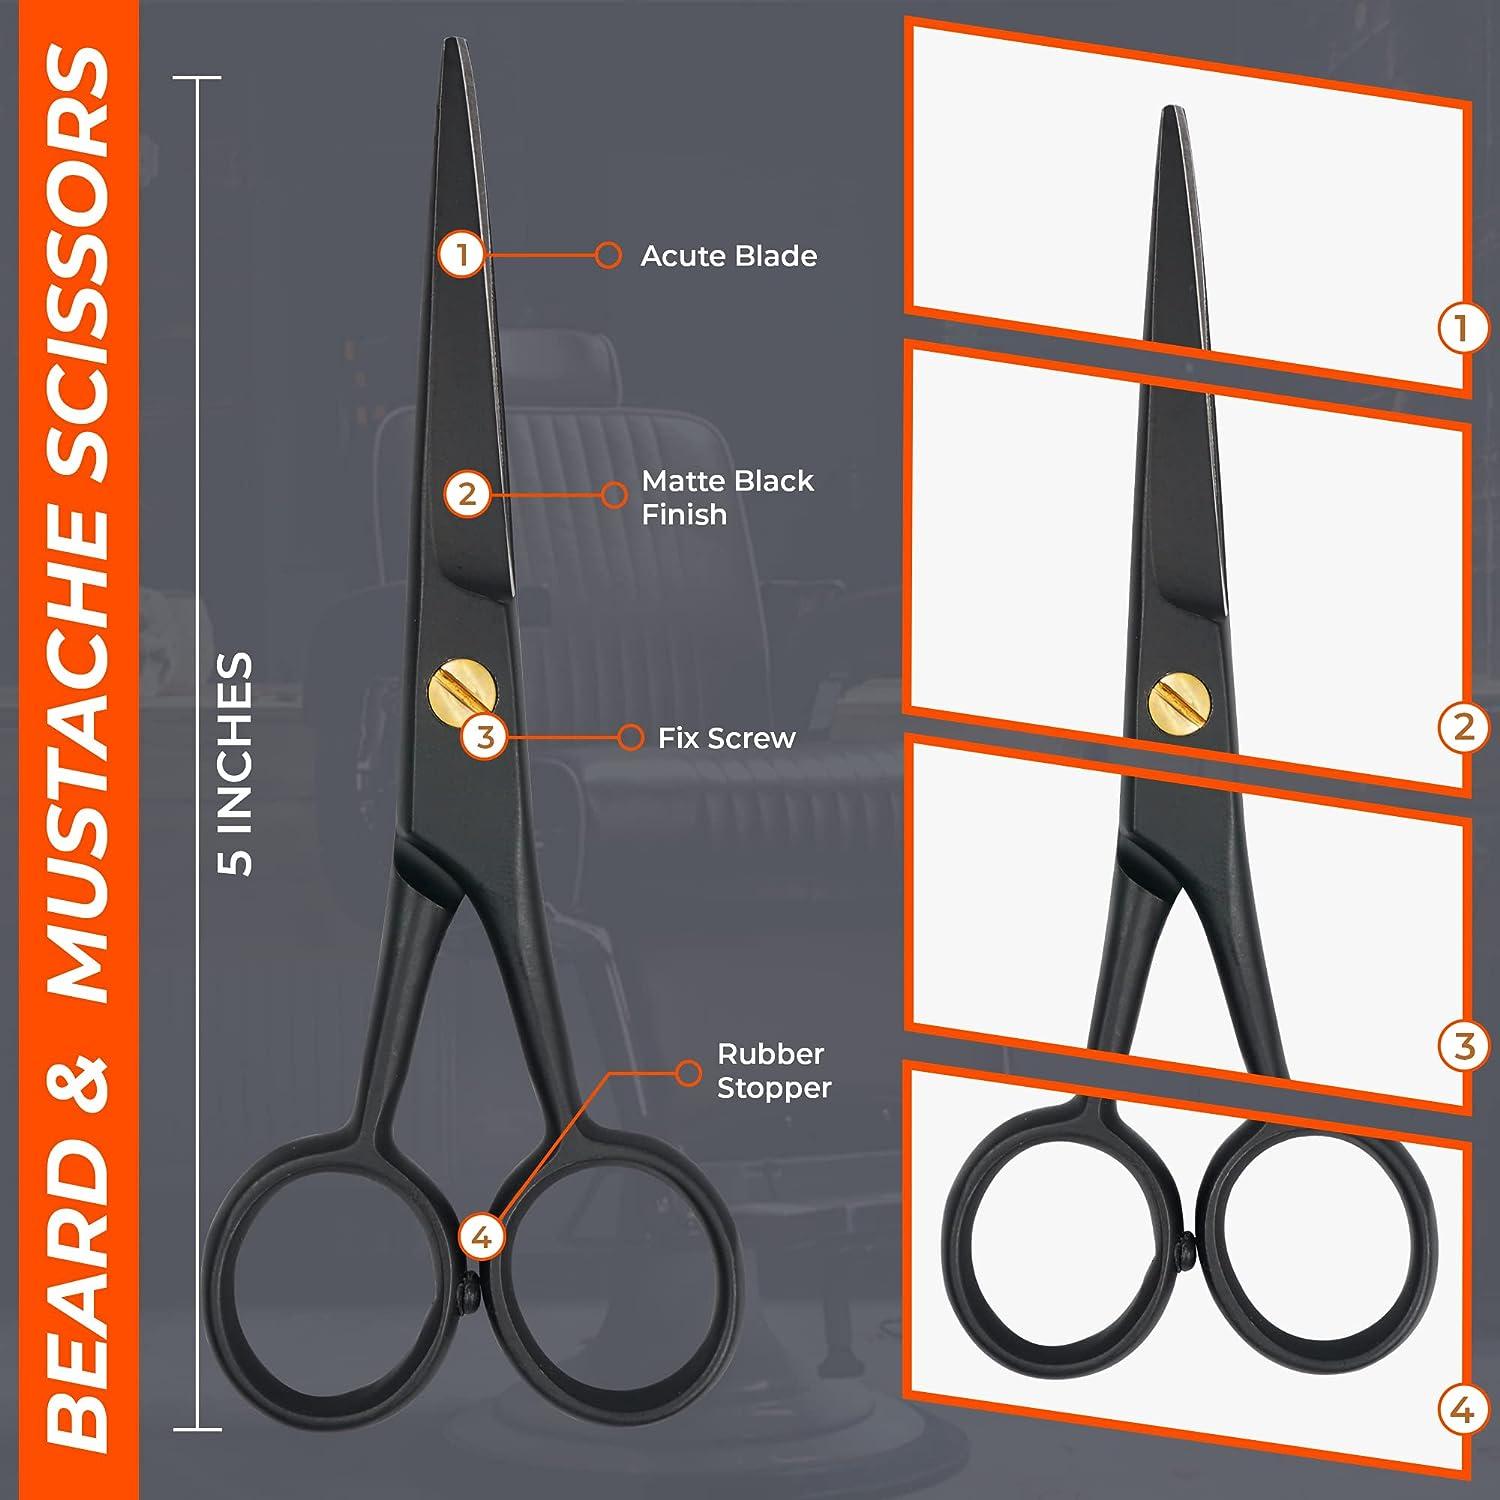 Adoro Tools 1096/05 Mustache Scissors & Comb Set (12pc bulk